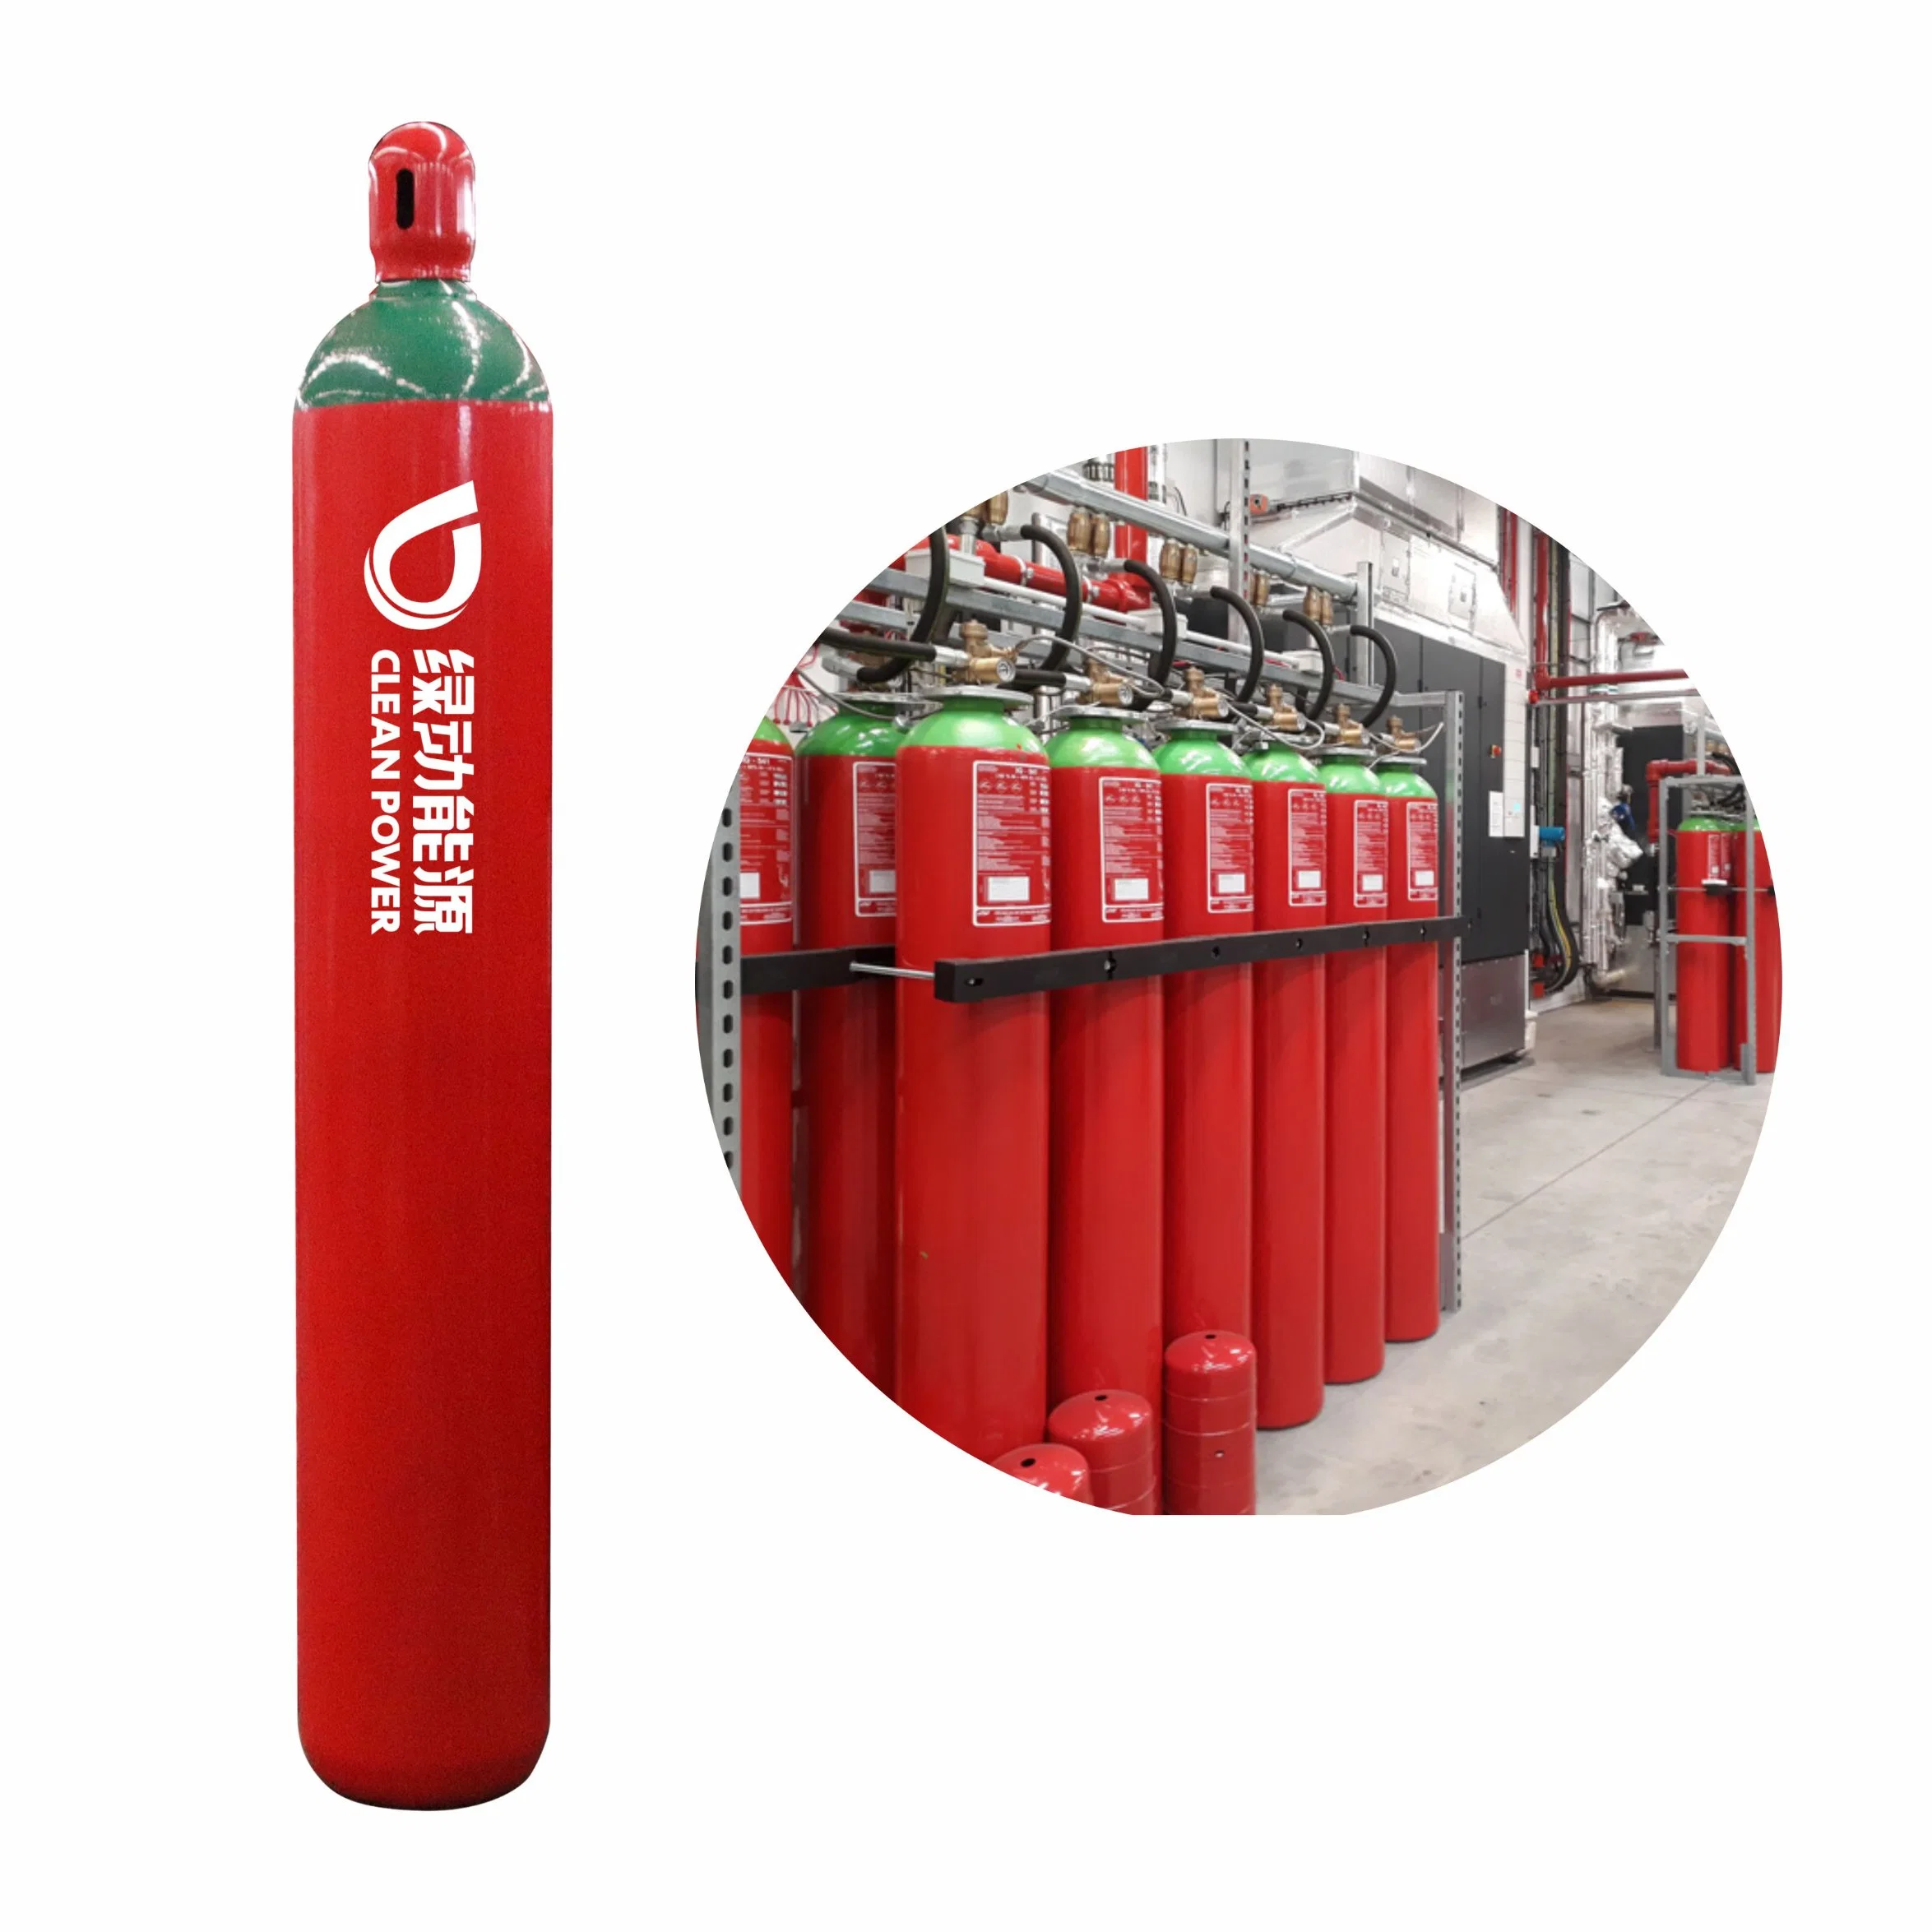 العلامة التجارية LD معدات السلامة من الحريق التي تم شبها أسطوانة غاز ثاني أكسيد الكربون